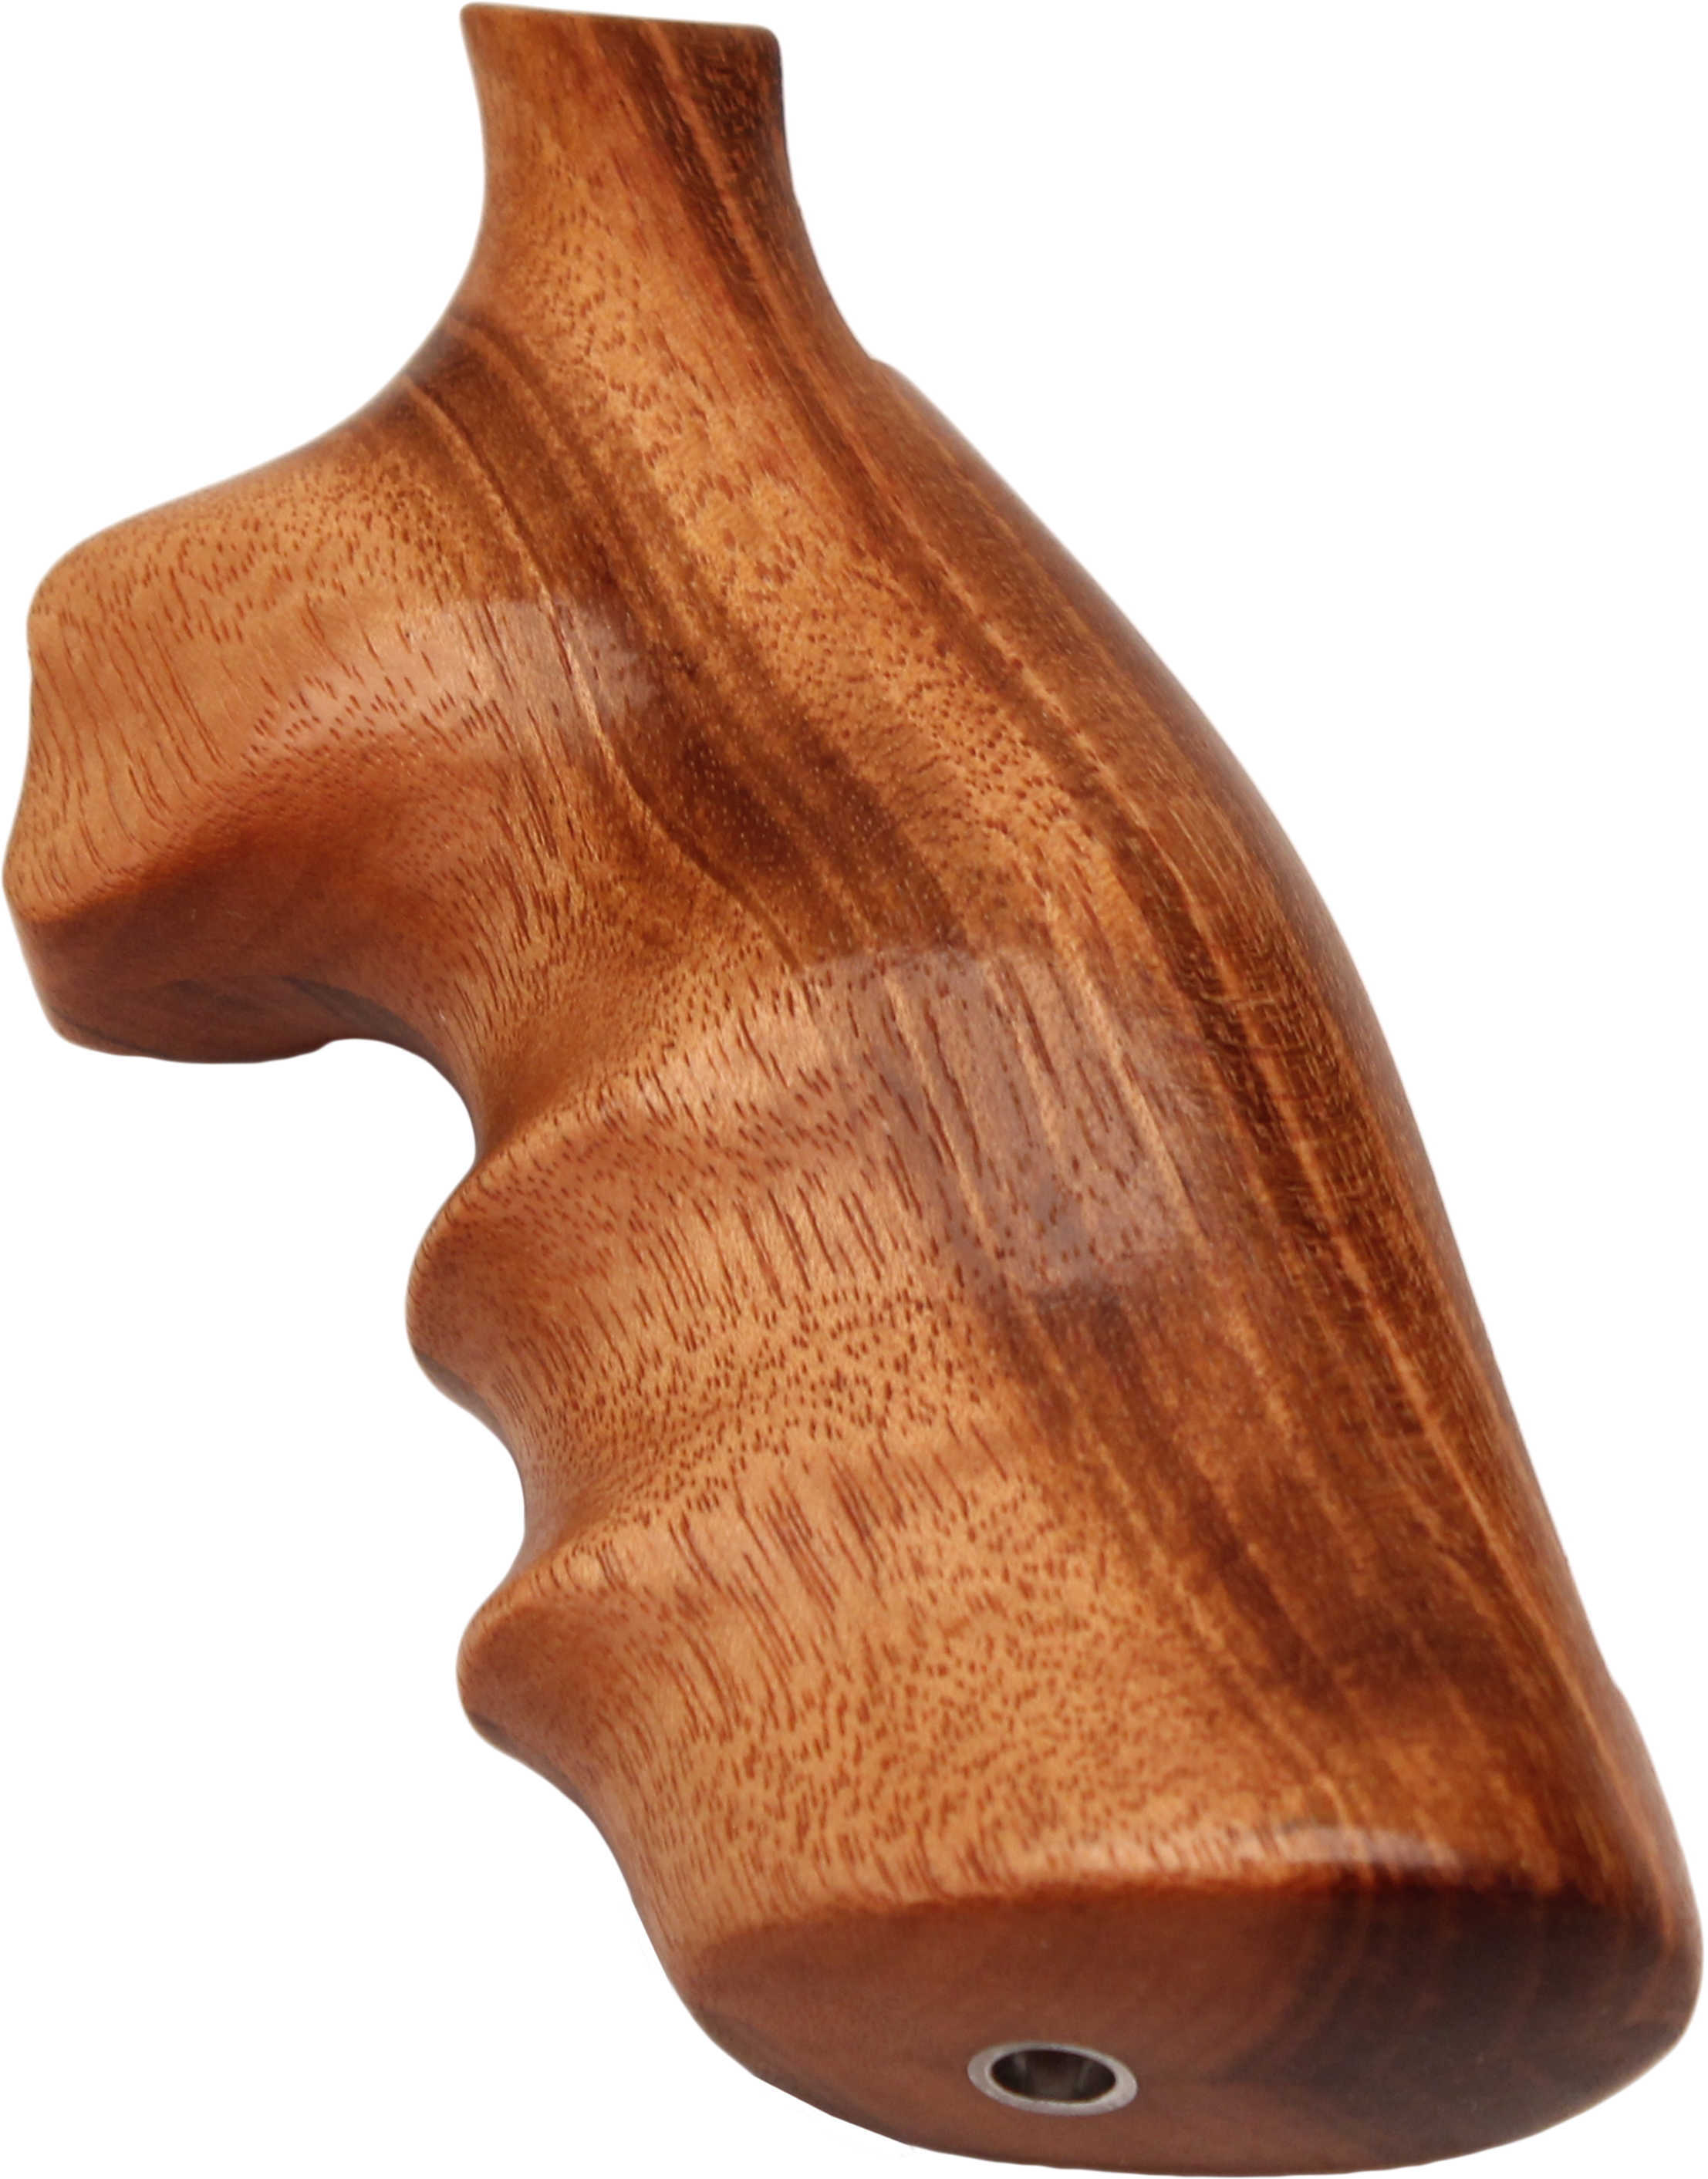 Hogue Wood Grip - Goncalo Alves S&W K/L Frame Square Butt 10200